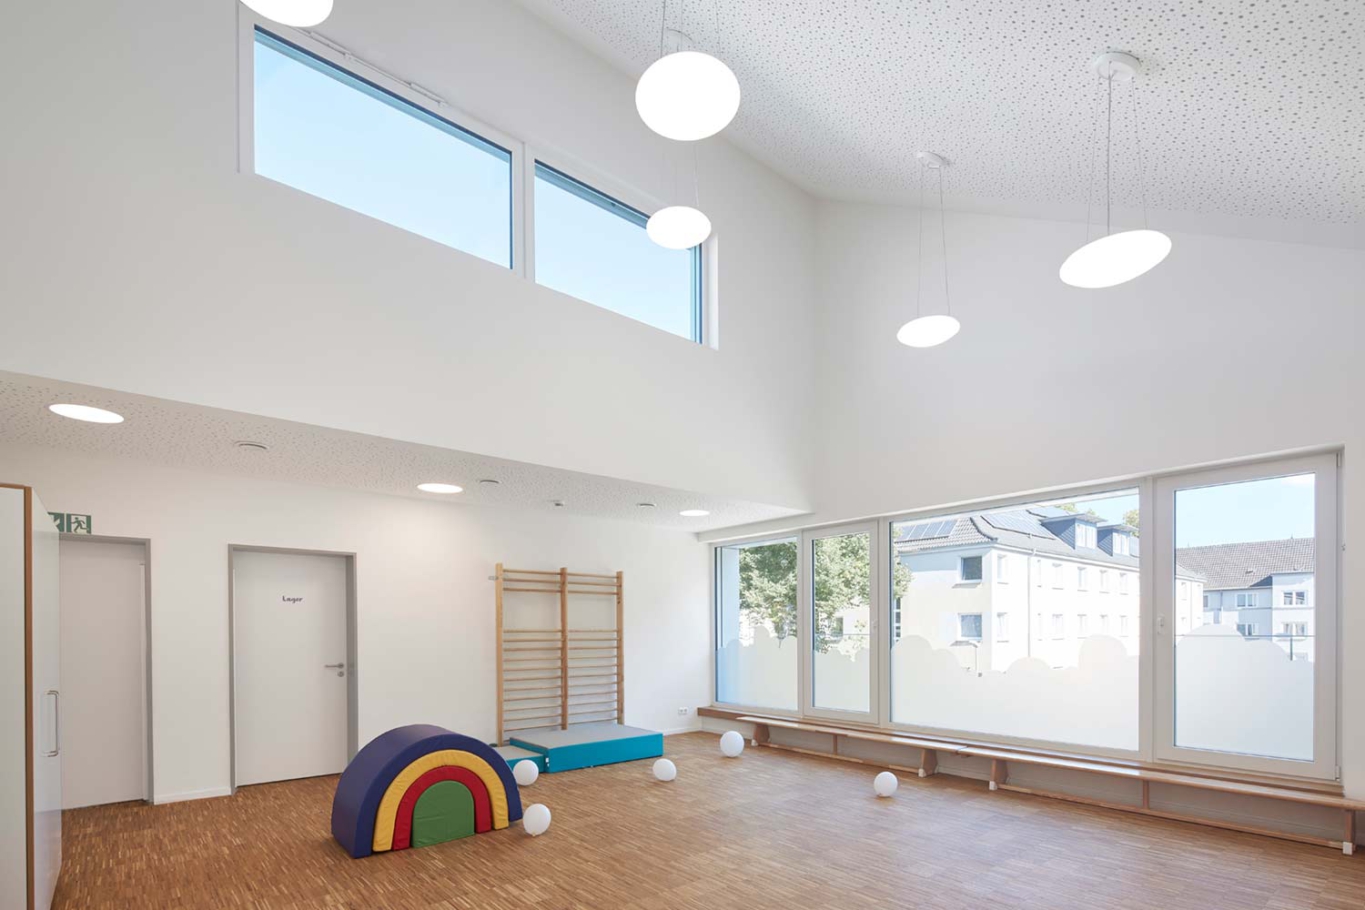 Lioba Schneider Architekturfotografie: In vier miteinander verbundenen Gebäuden mit Spitzgiebel wurde eine neue Kita untergebracht. Jedes Haus hat eine eigene sehr bunte Farbe, die Dächer sind im gleichen Farbton gehalten.